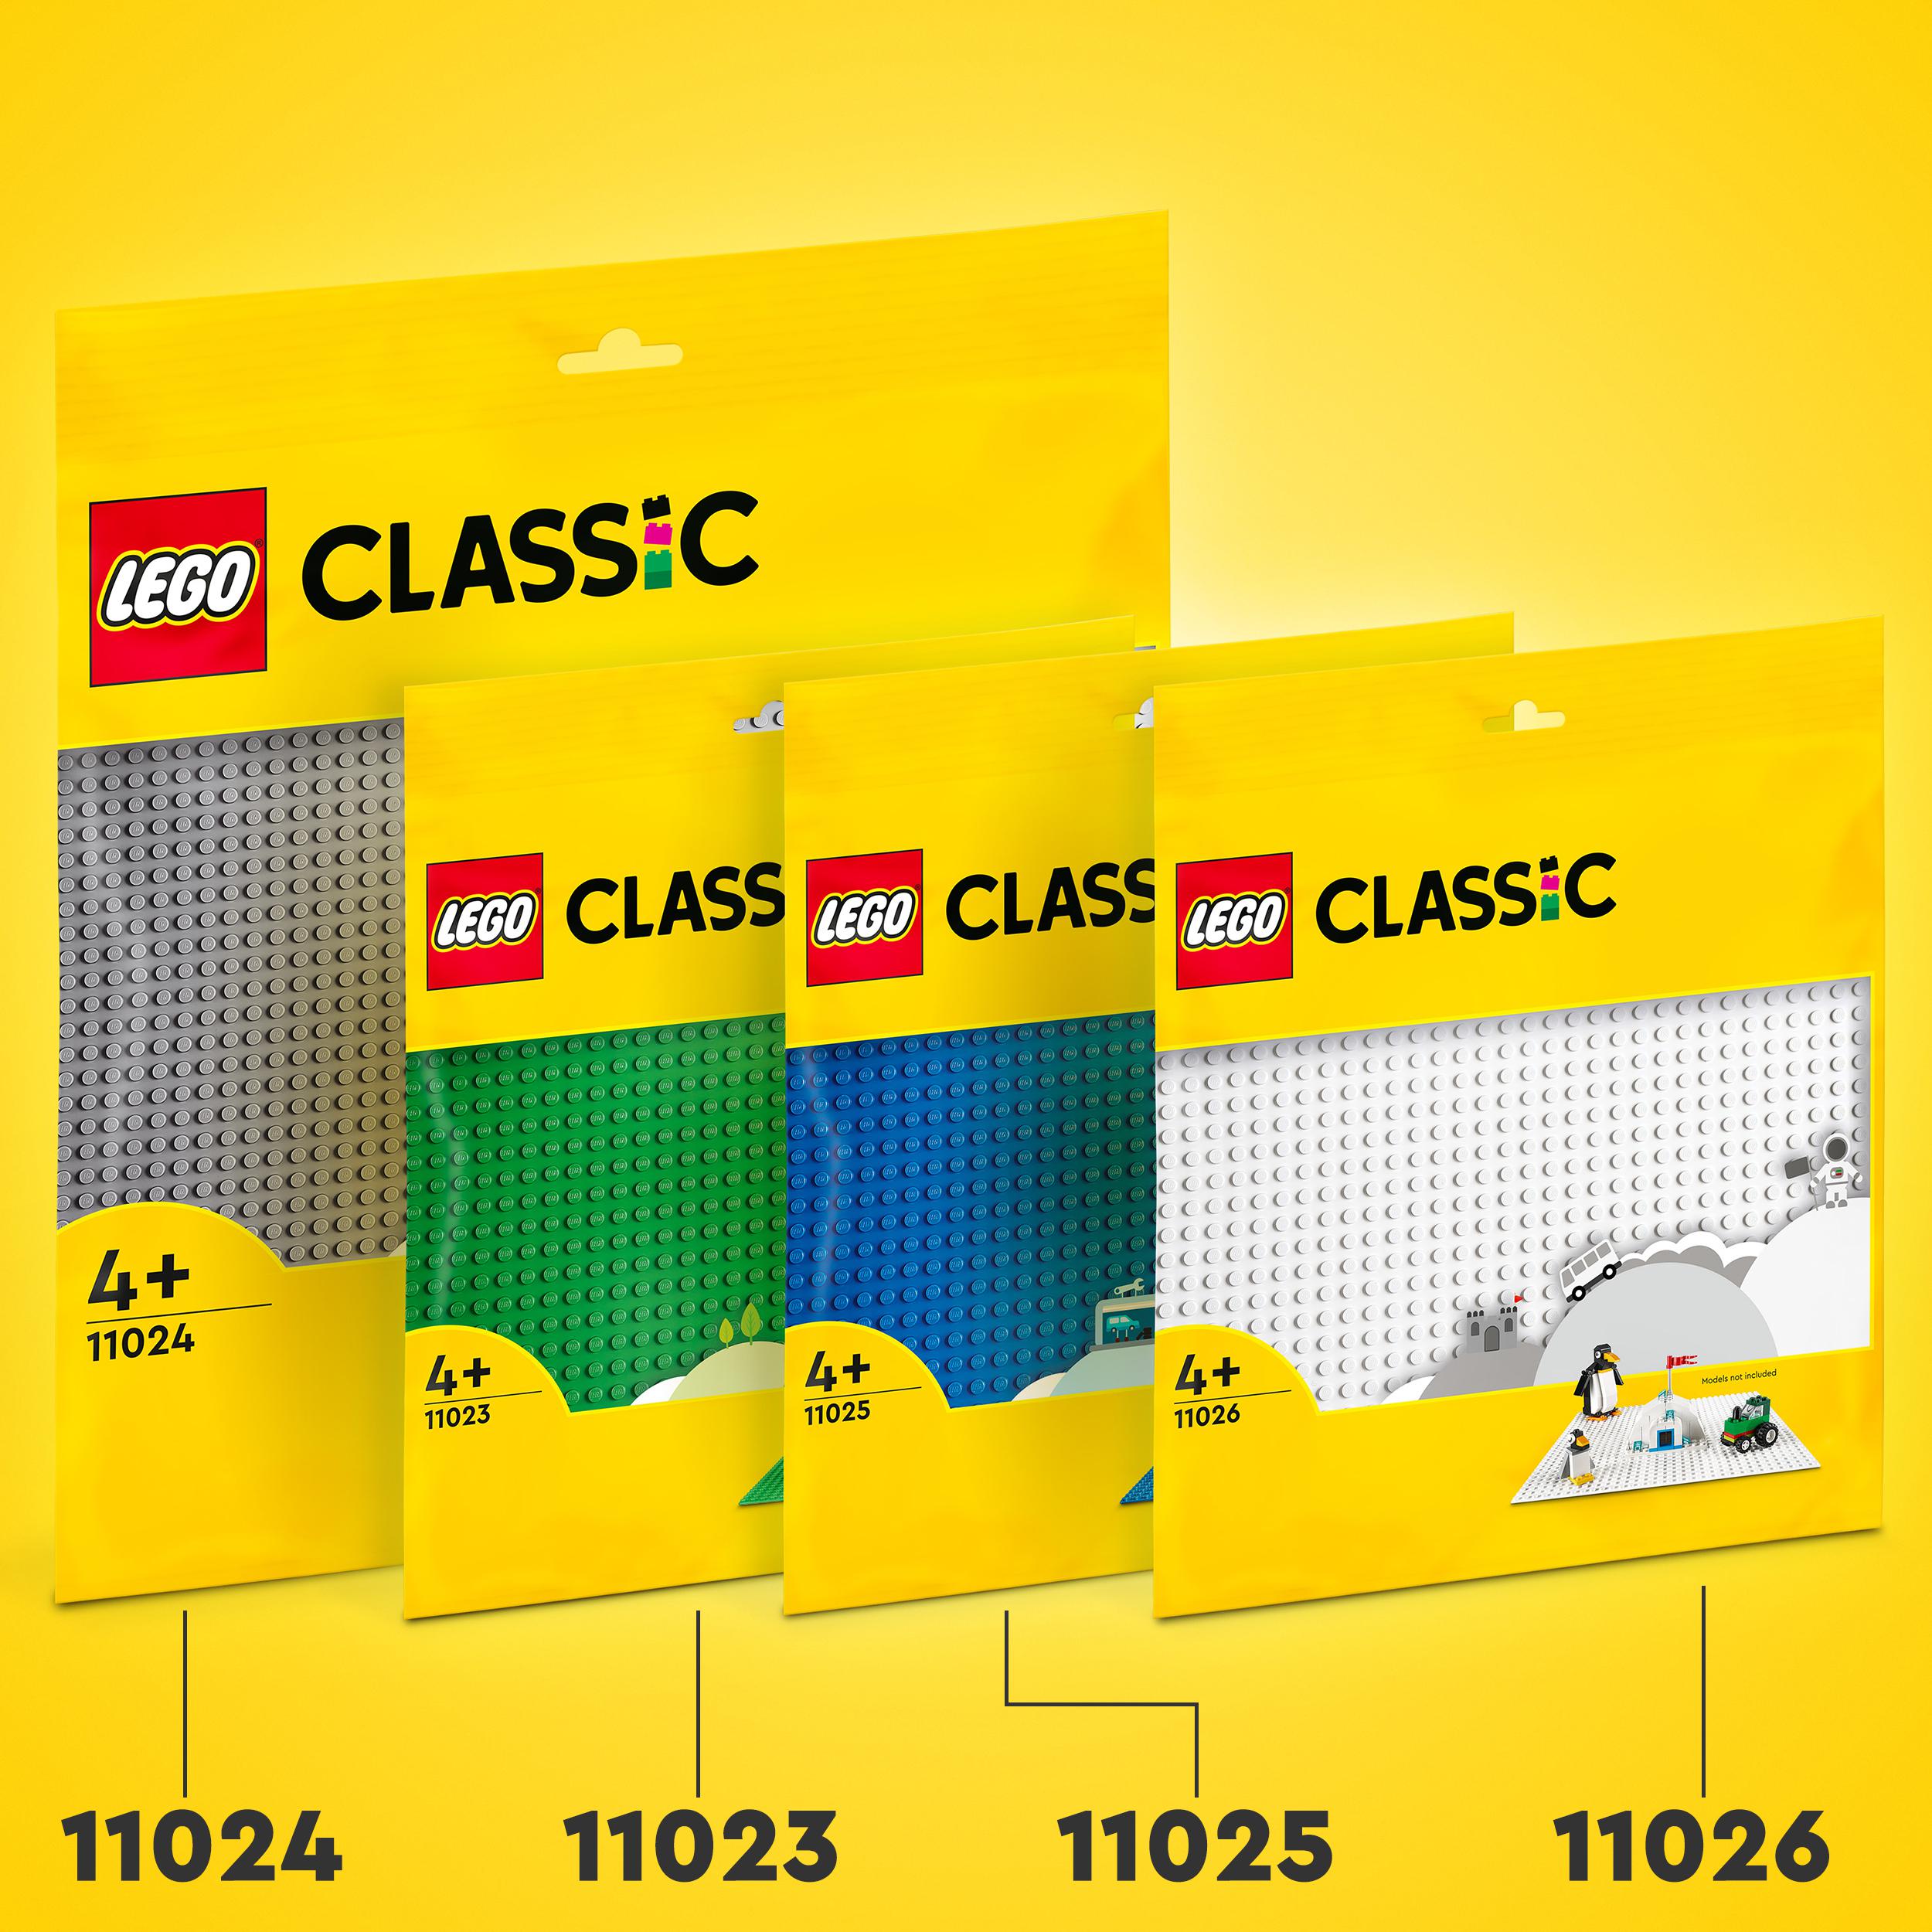 Lego classic 11025 base blu, tavola per costruzioni quadrata con 32x32 bottoncini, piattaforma classica per mattoncini - LEGO CLASSIC, Lego